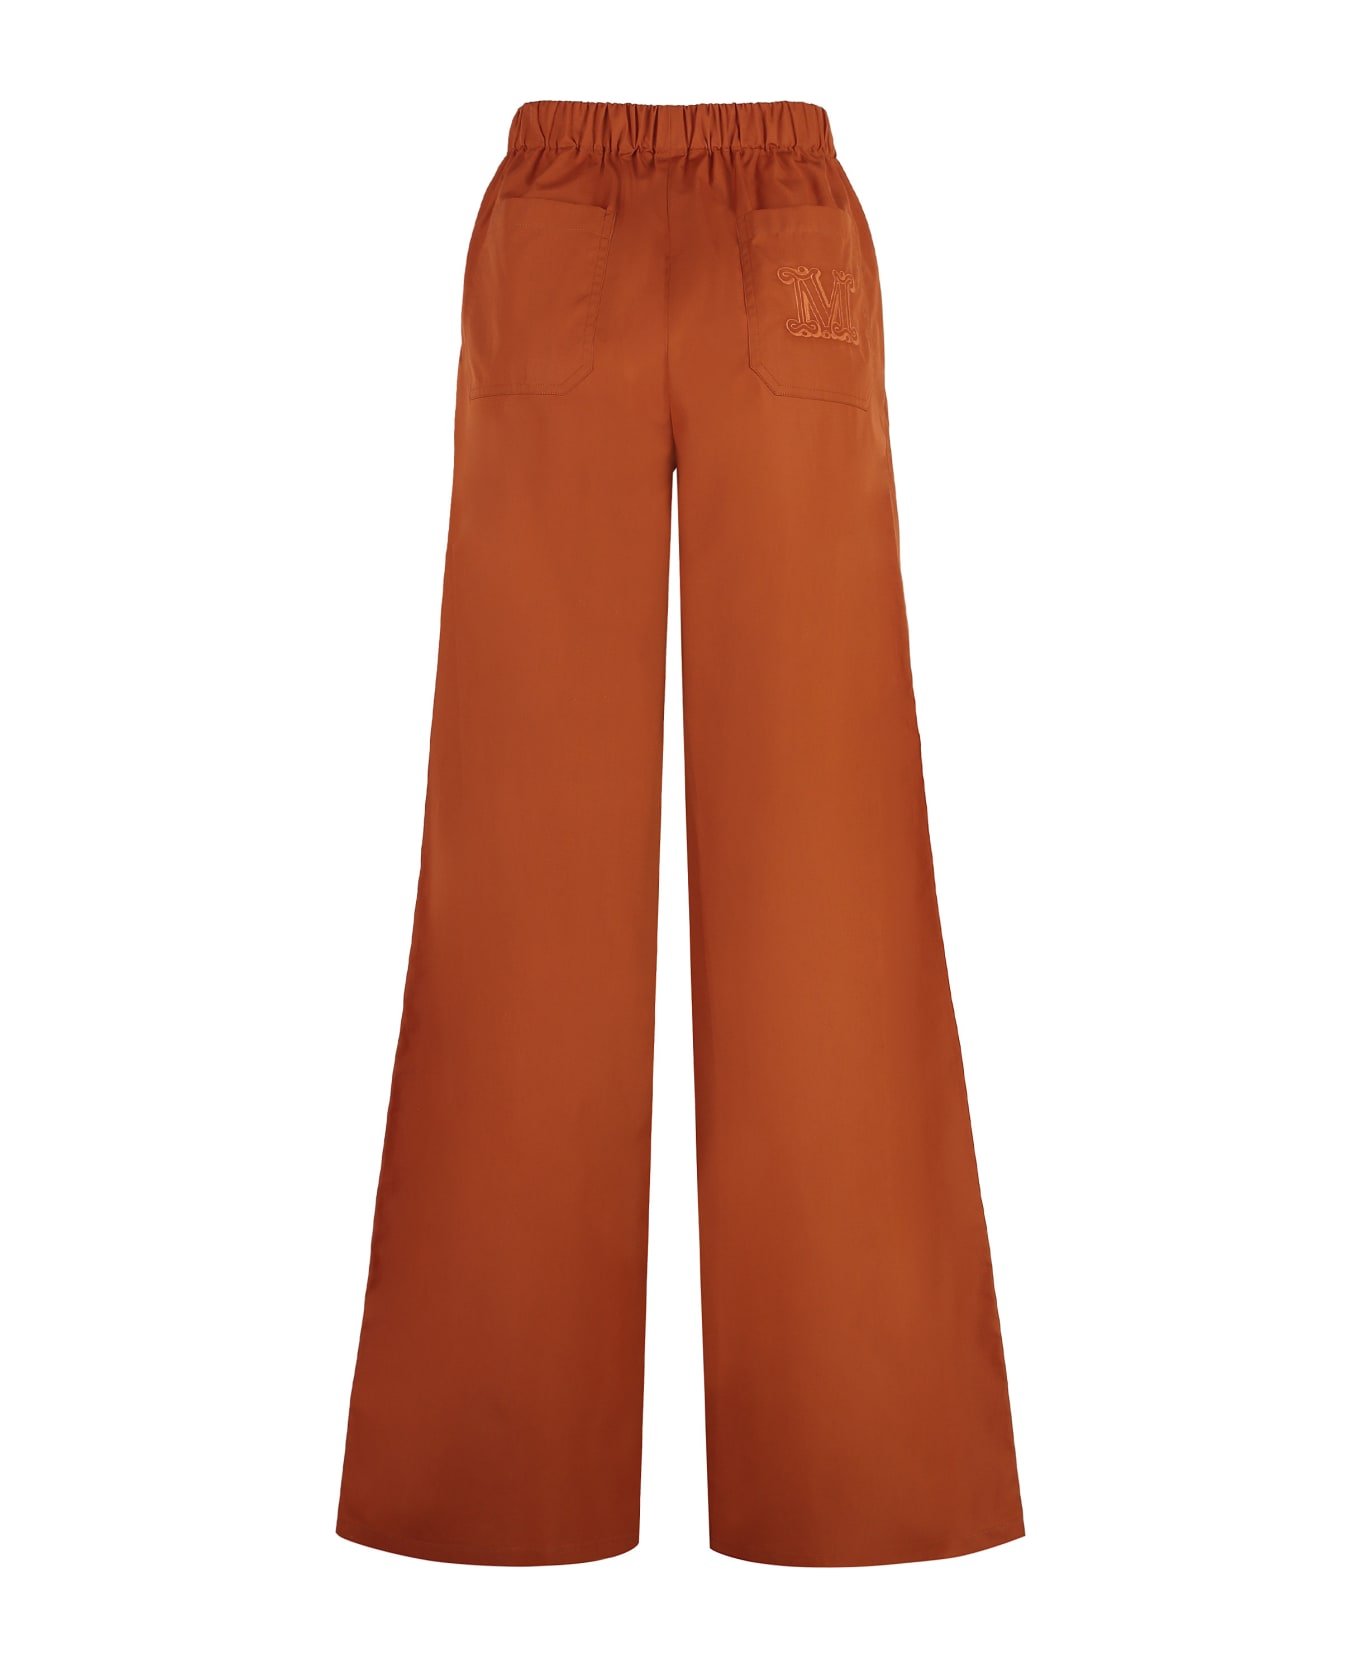 Max Mara Navigli Cotton Trousers - Orange ボトムス